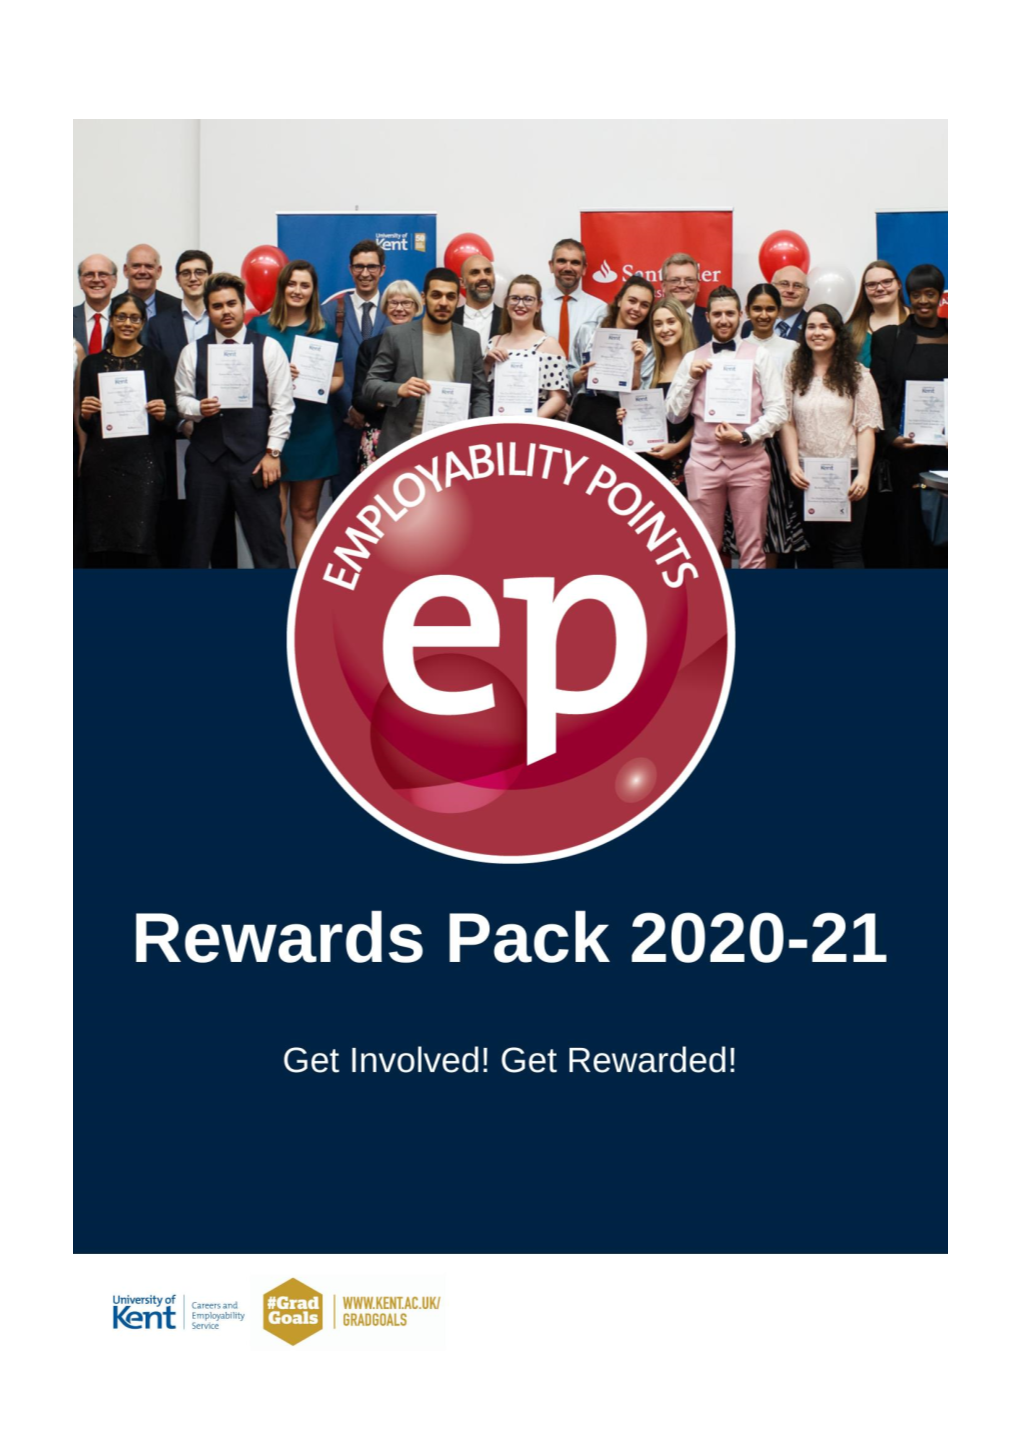 Rewards Pack – Applying for EP Rewards